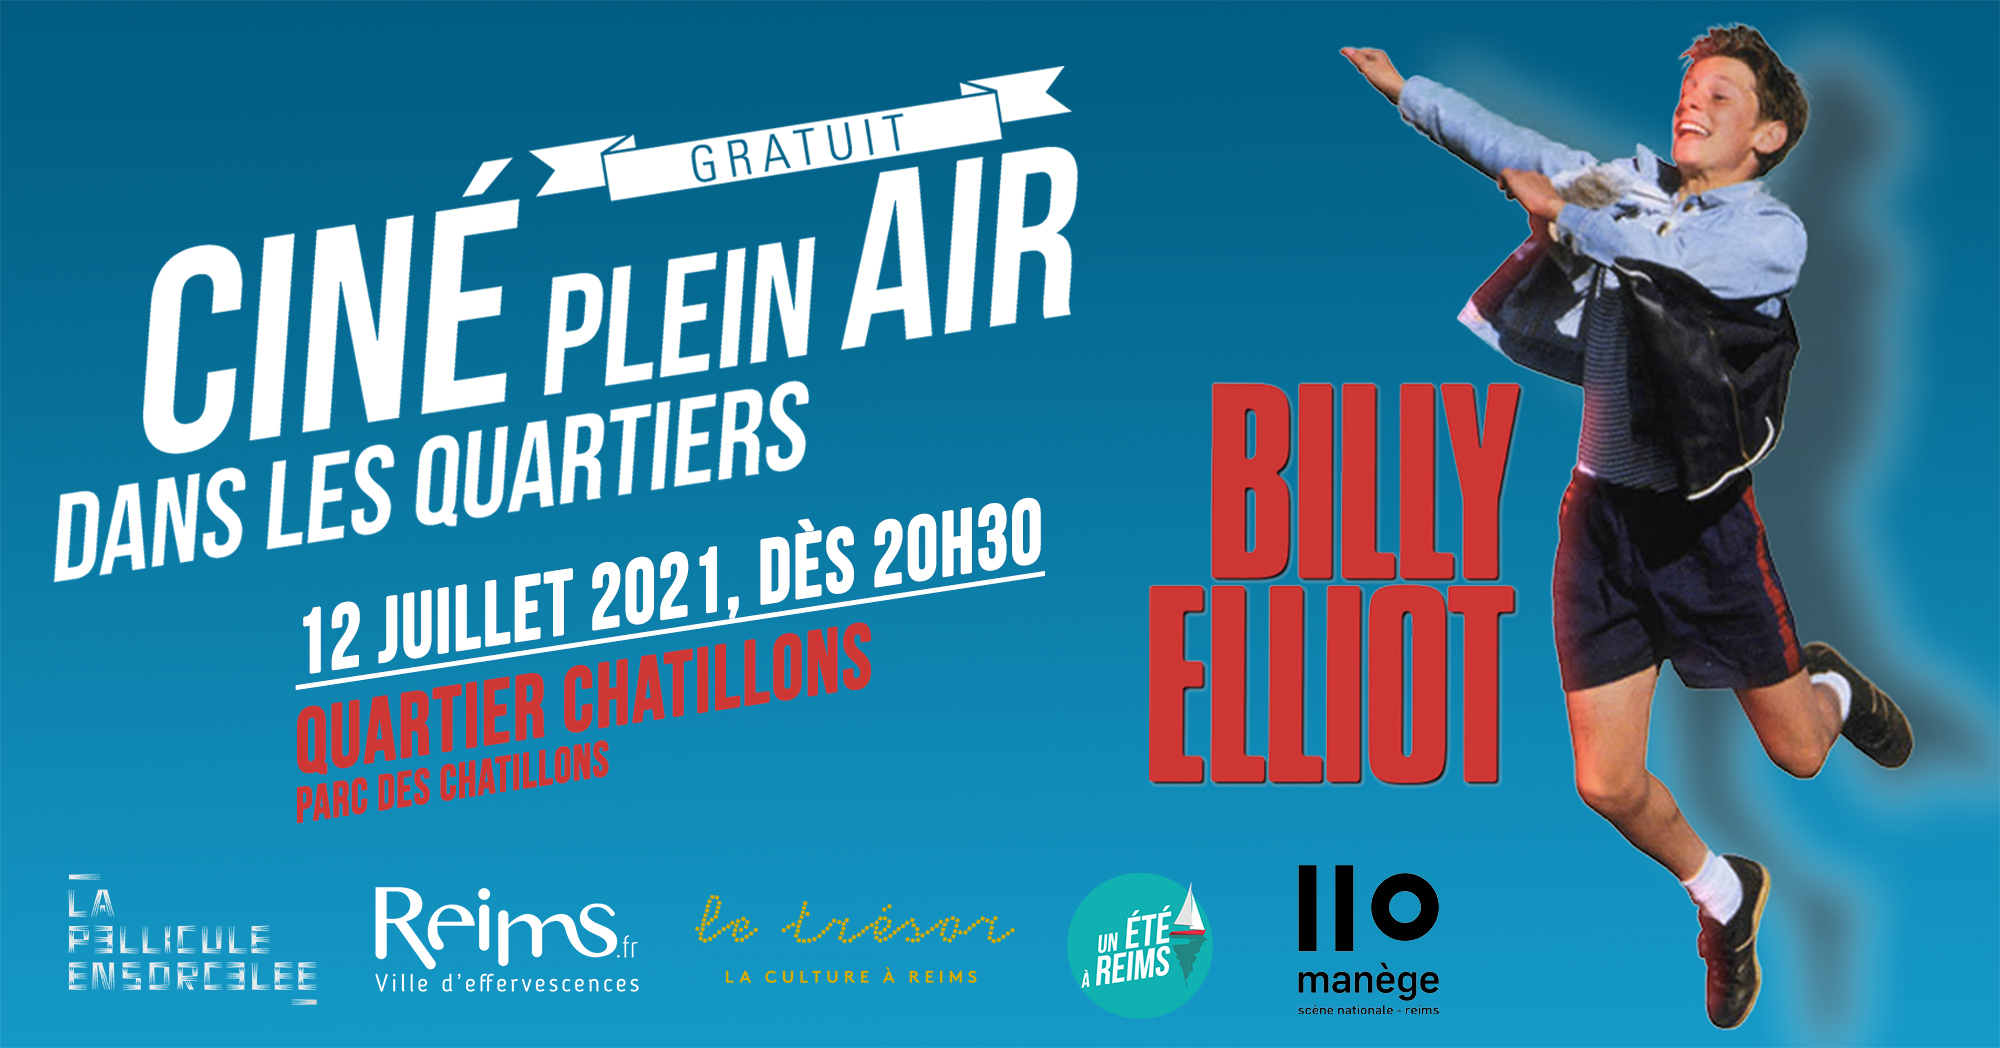 Bannière Ciné Plein Air Billy Elliot